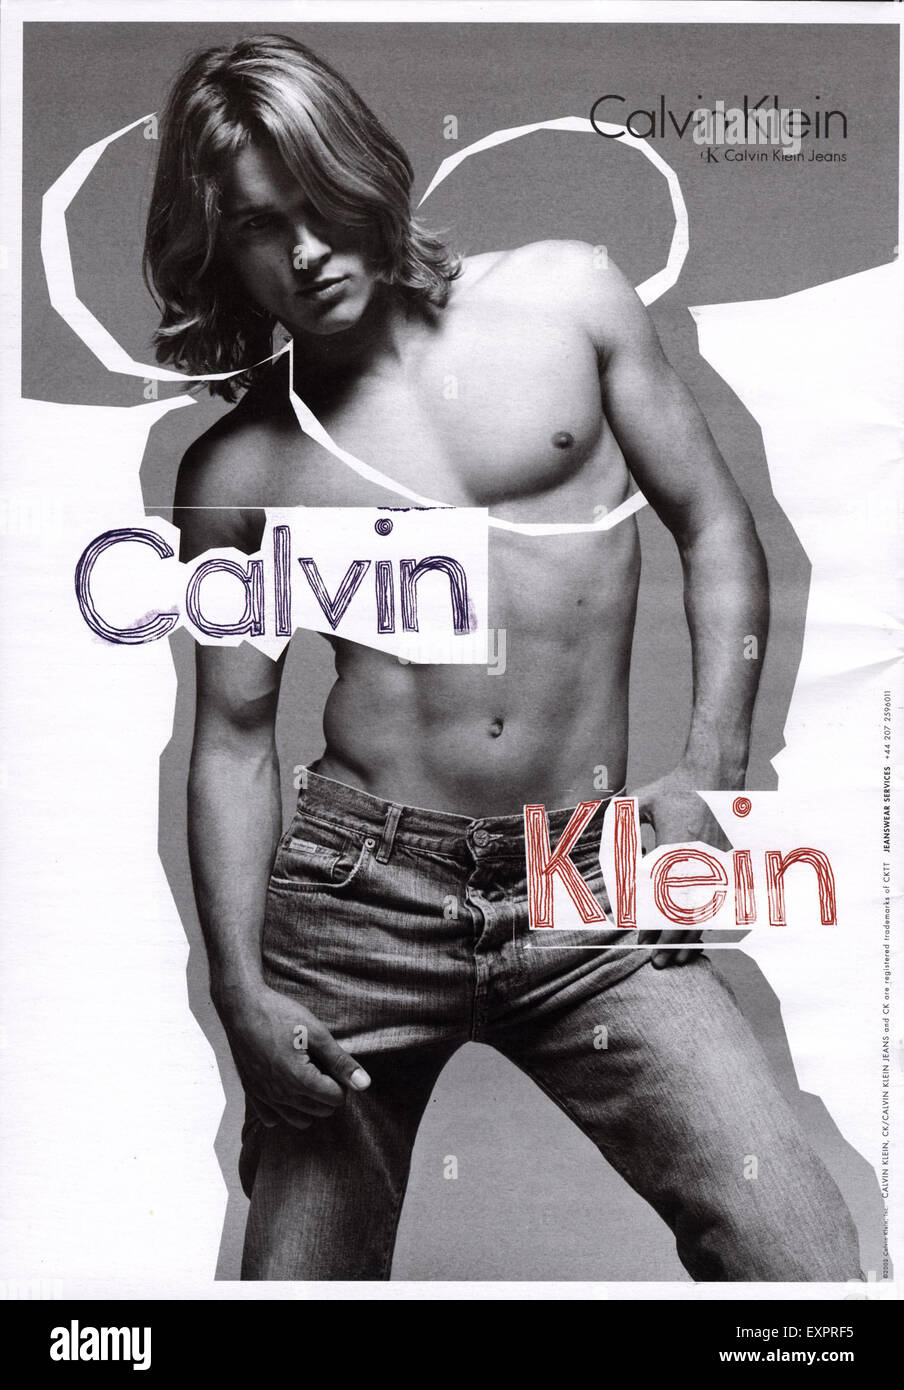 2000er Jahre UK Calvin Klein Magazin Anzeige Stockfotografie - Alamy